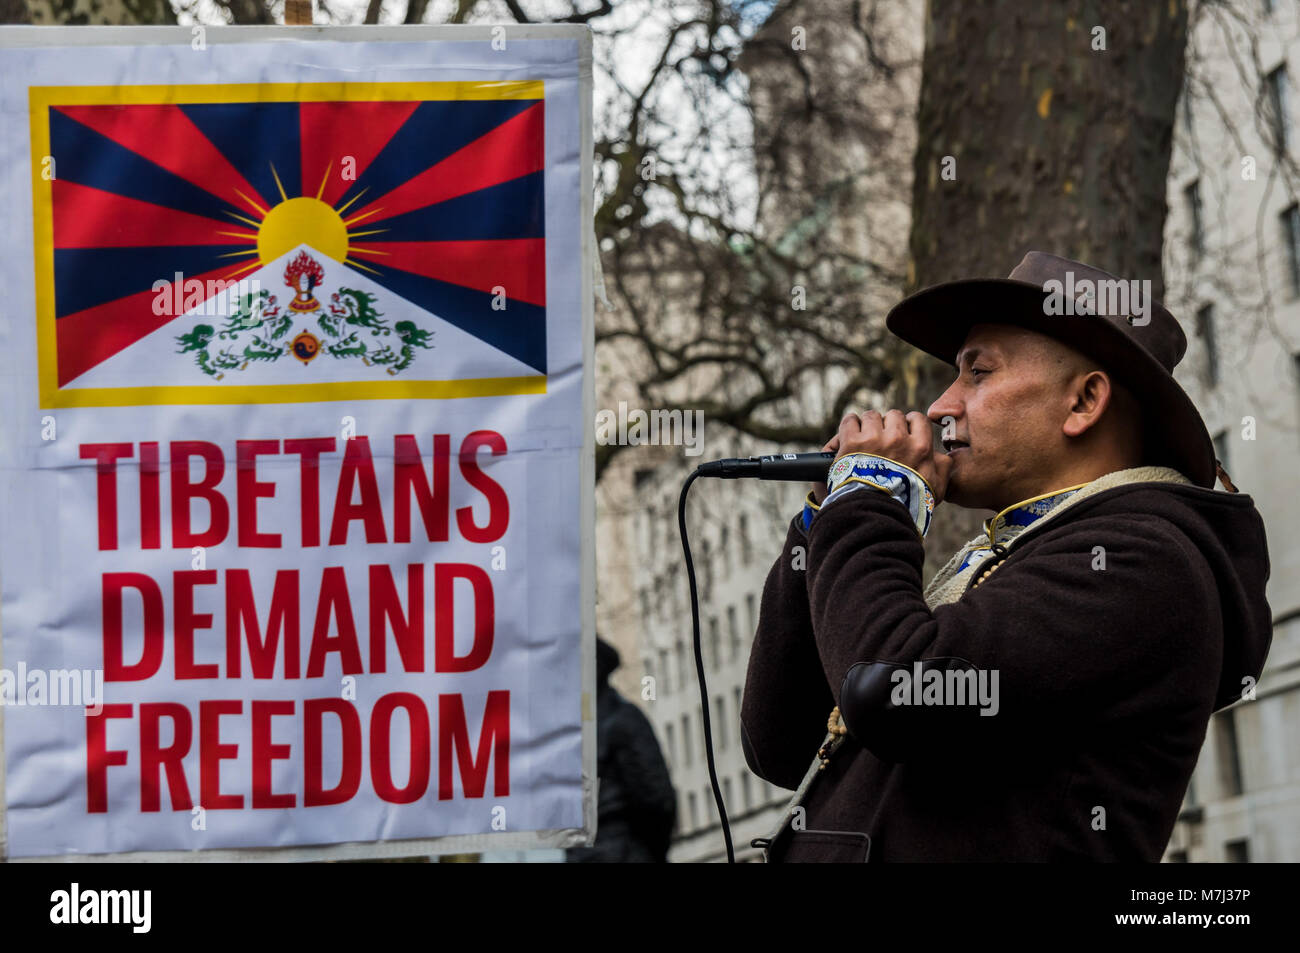 Londres, Royaume-Uni. 10 mars 2018. Un homme dirige quelques chant durant le rallye avant l'assemblée annuelle de la liberté du Tibet à Londres mars commémorant le 59e anniversaire du soulèvement national tibétain. Plusieurs centaines de personnes, dont de nombreux Tibétains et sympathisants se rassemblent à Downing St avant de marcher à une protestation à l'ambassade de Chine. Avant la marche gauche il y avait une minute de silence pour ceux qui sont morts, y compris par l'auto-immolation, et une longue prière tibétain, suivi par le chant de l'hymne national tibétain. esLiv Crédit : ZUMA Press, Inc./Alamy Live News Banque D'Images